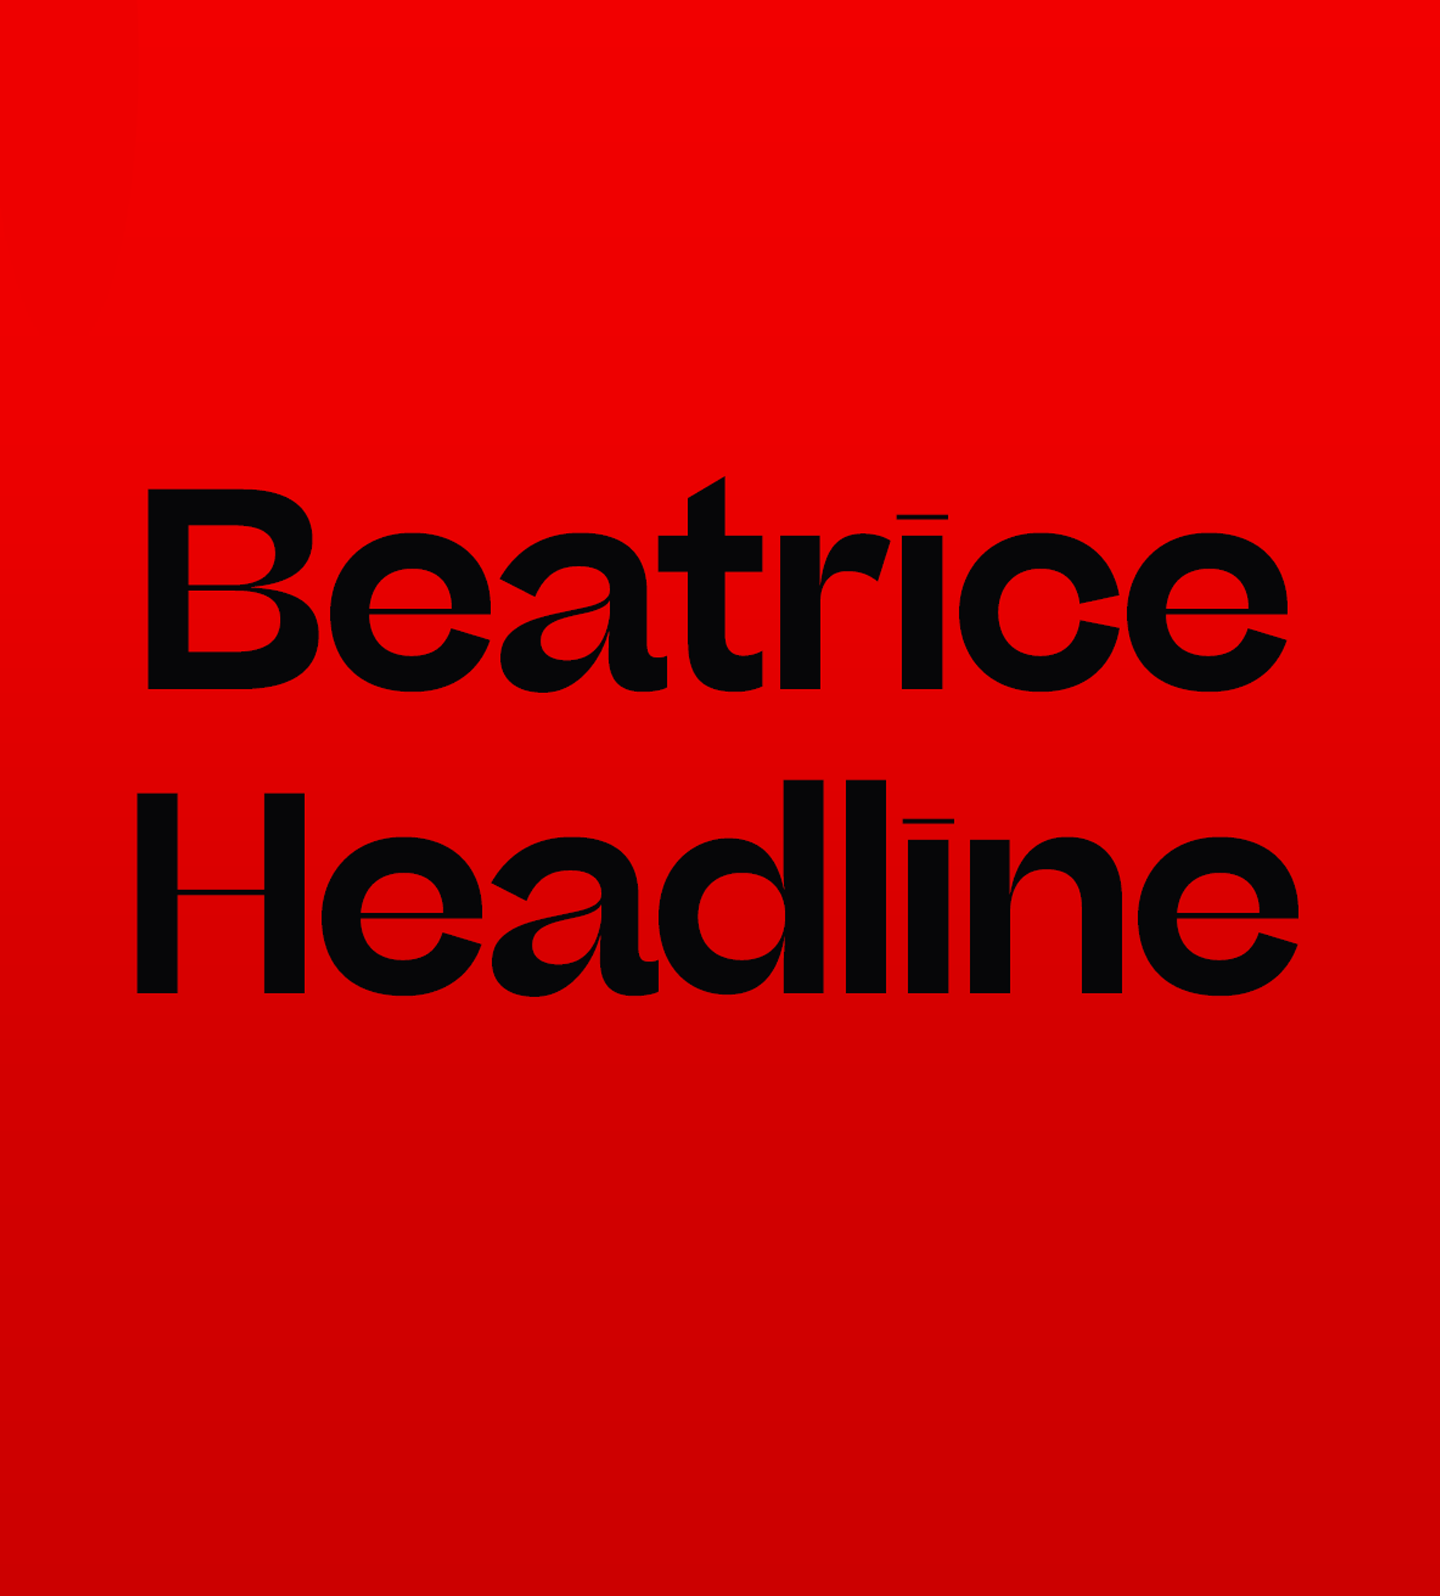 Przykład czcionki Beatrice Headline Extra bold Italic